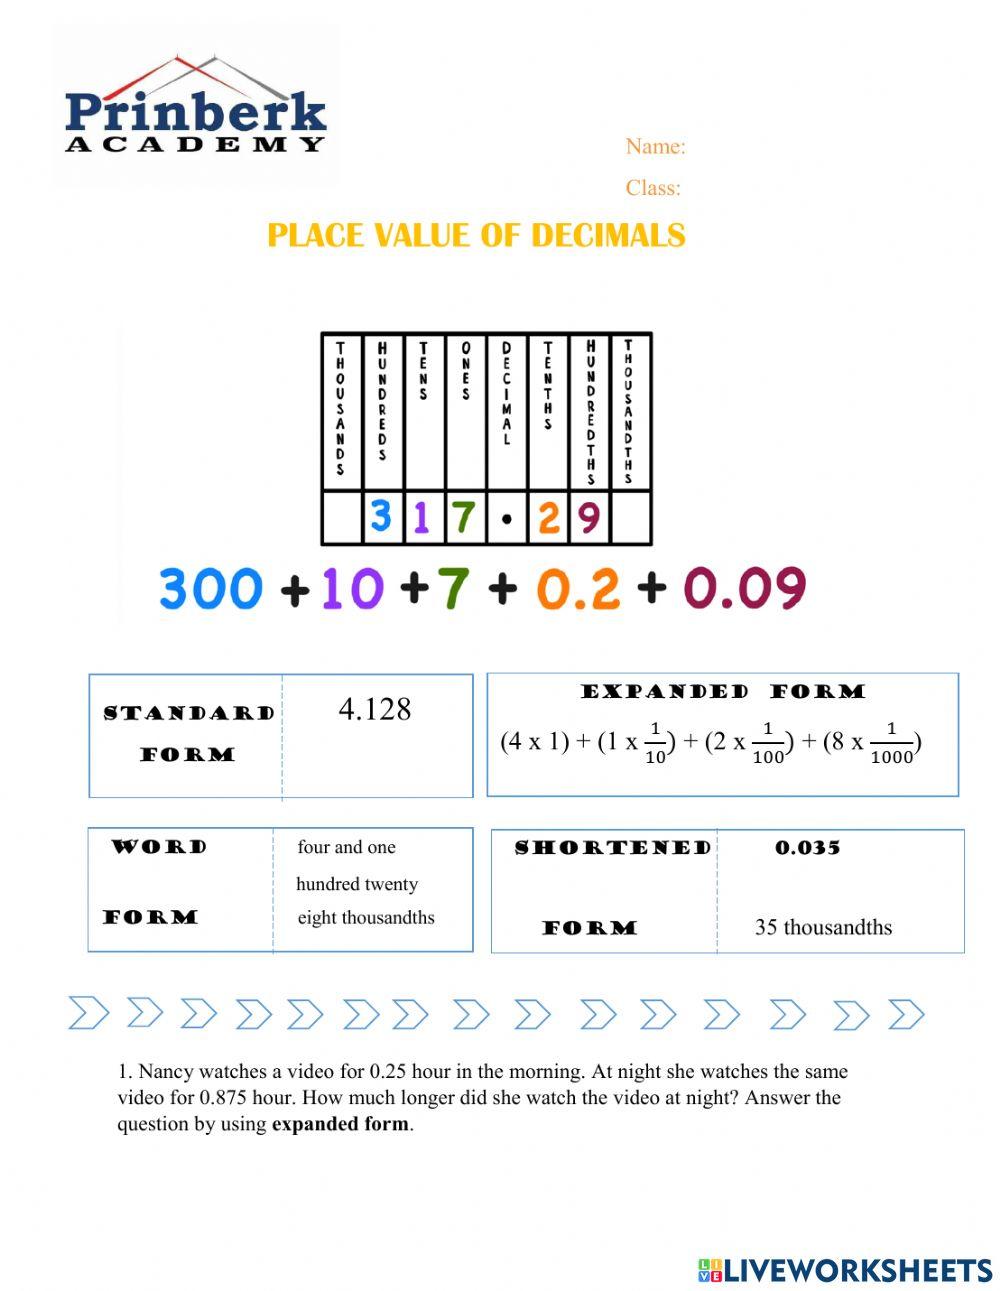 Place value of decimals